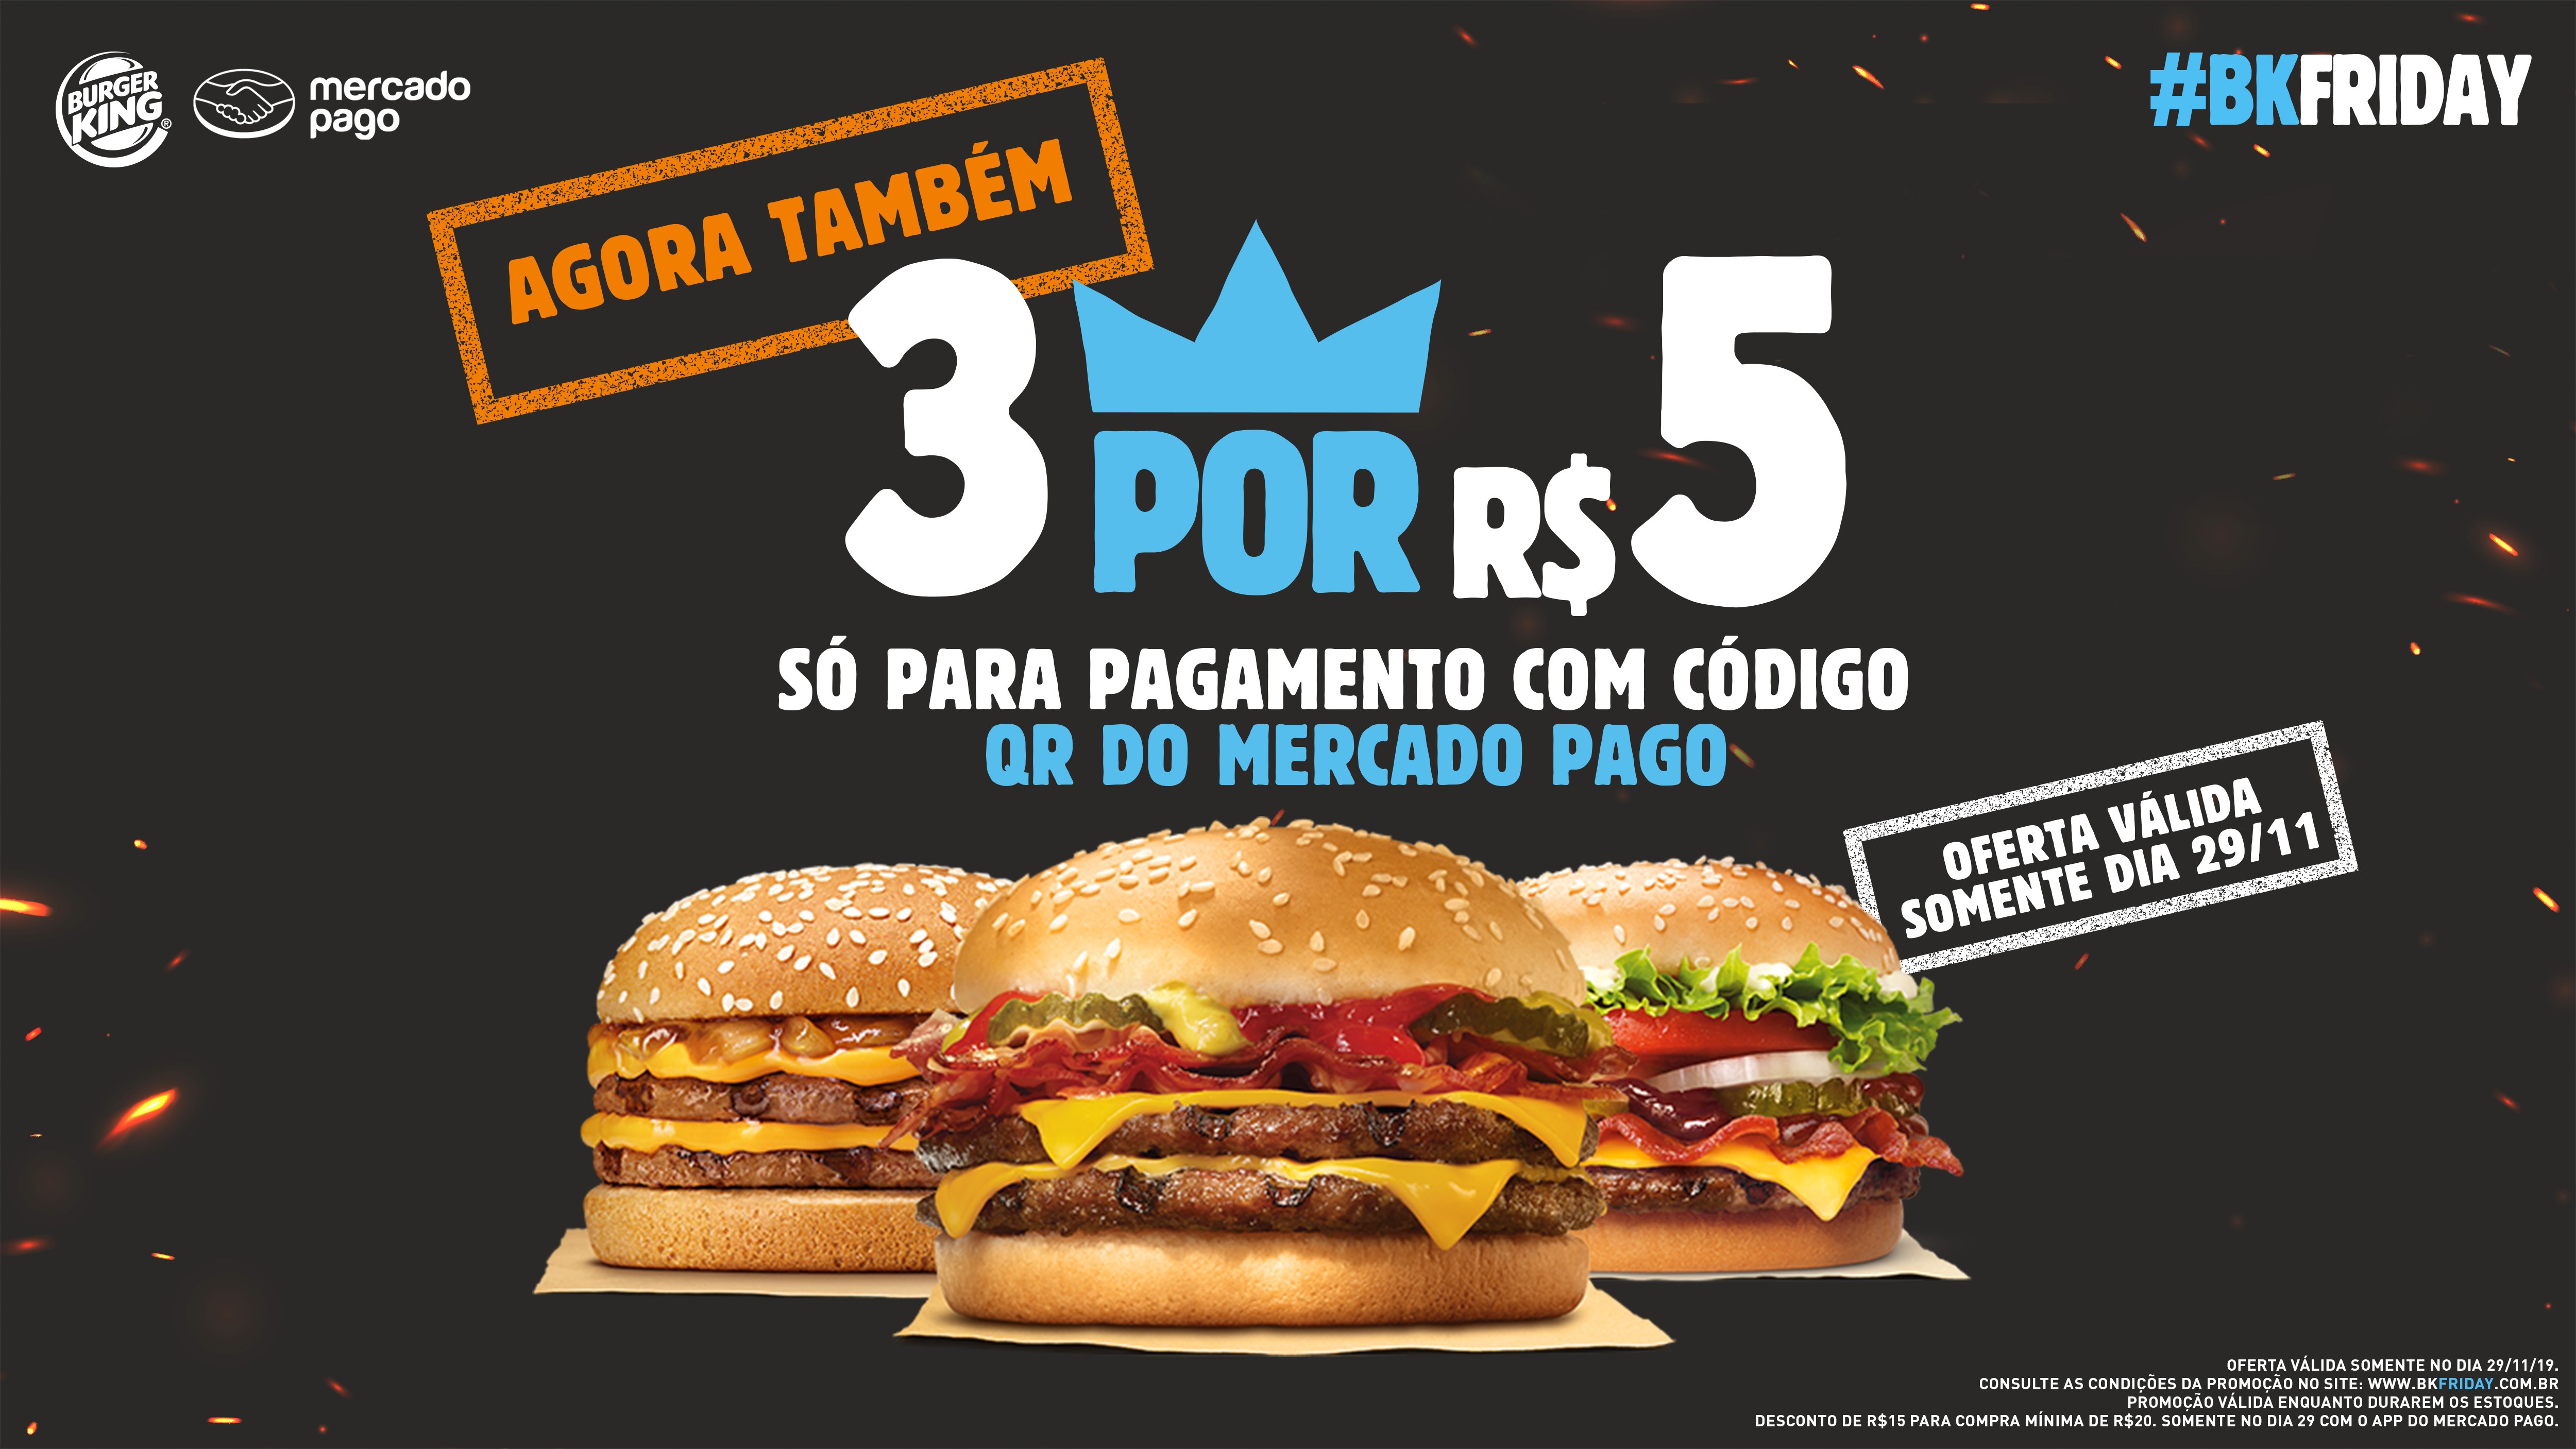 Foi bacon em tudo que vocês pediram? - Burger King Brasil